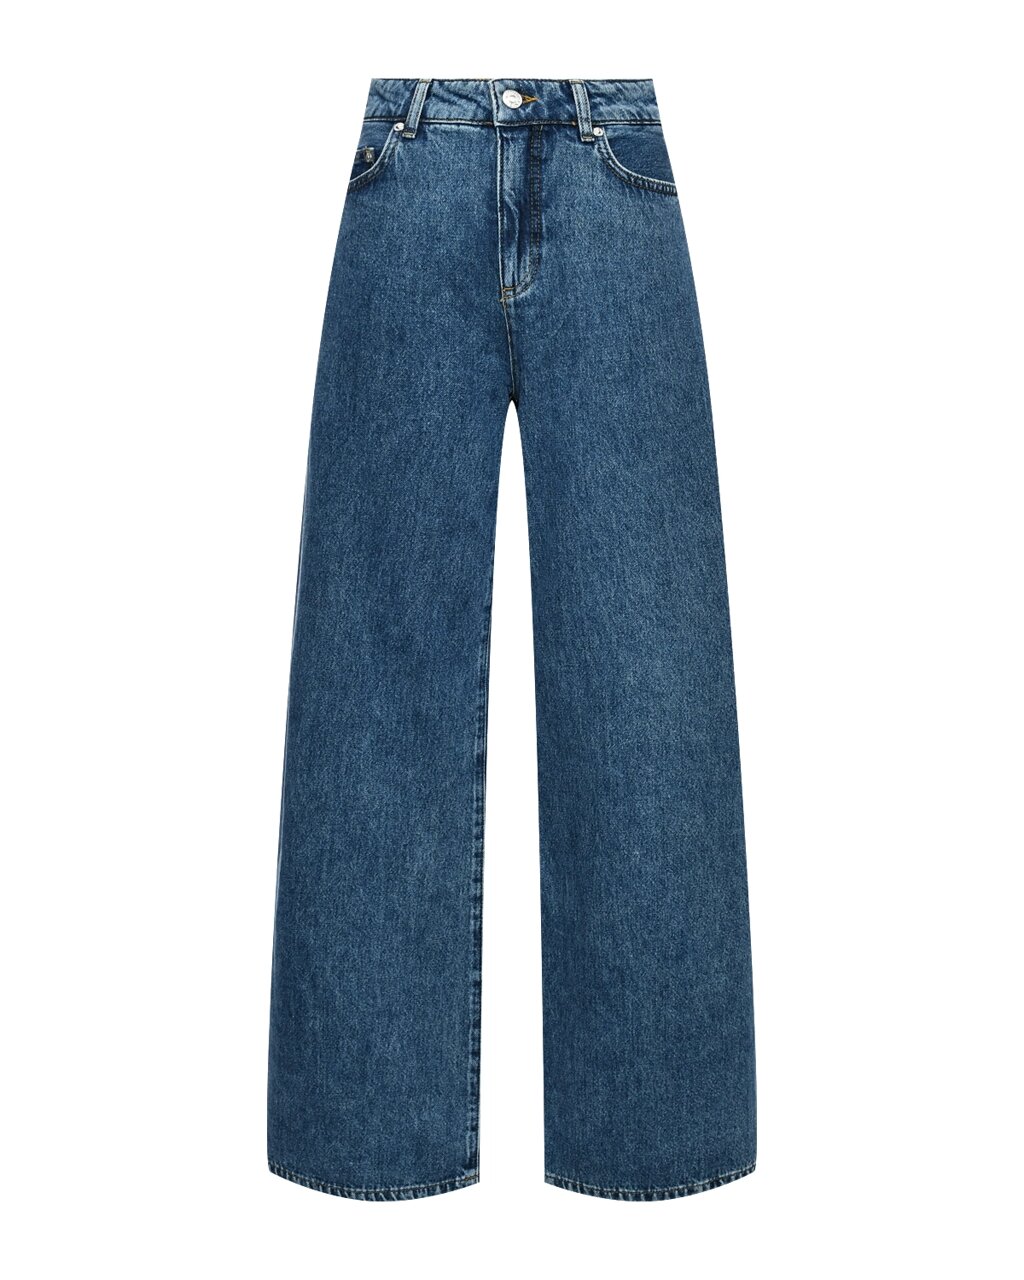 Джинсы палаццо широкие, синие Mo5ch1no Jeans от компании Admi - фото 1